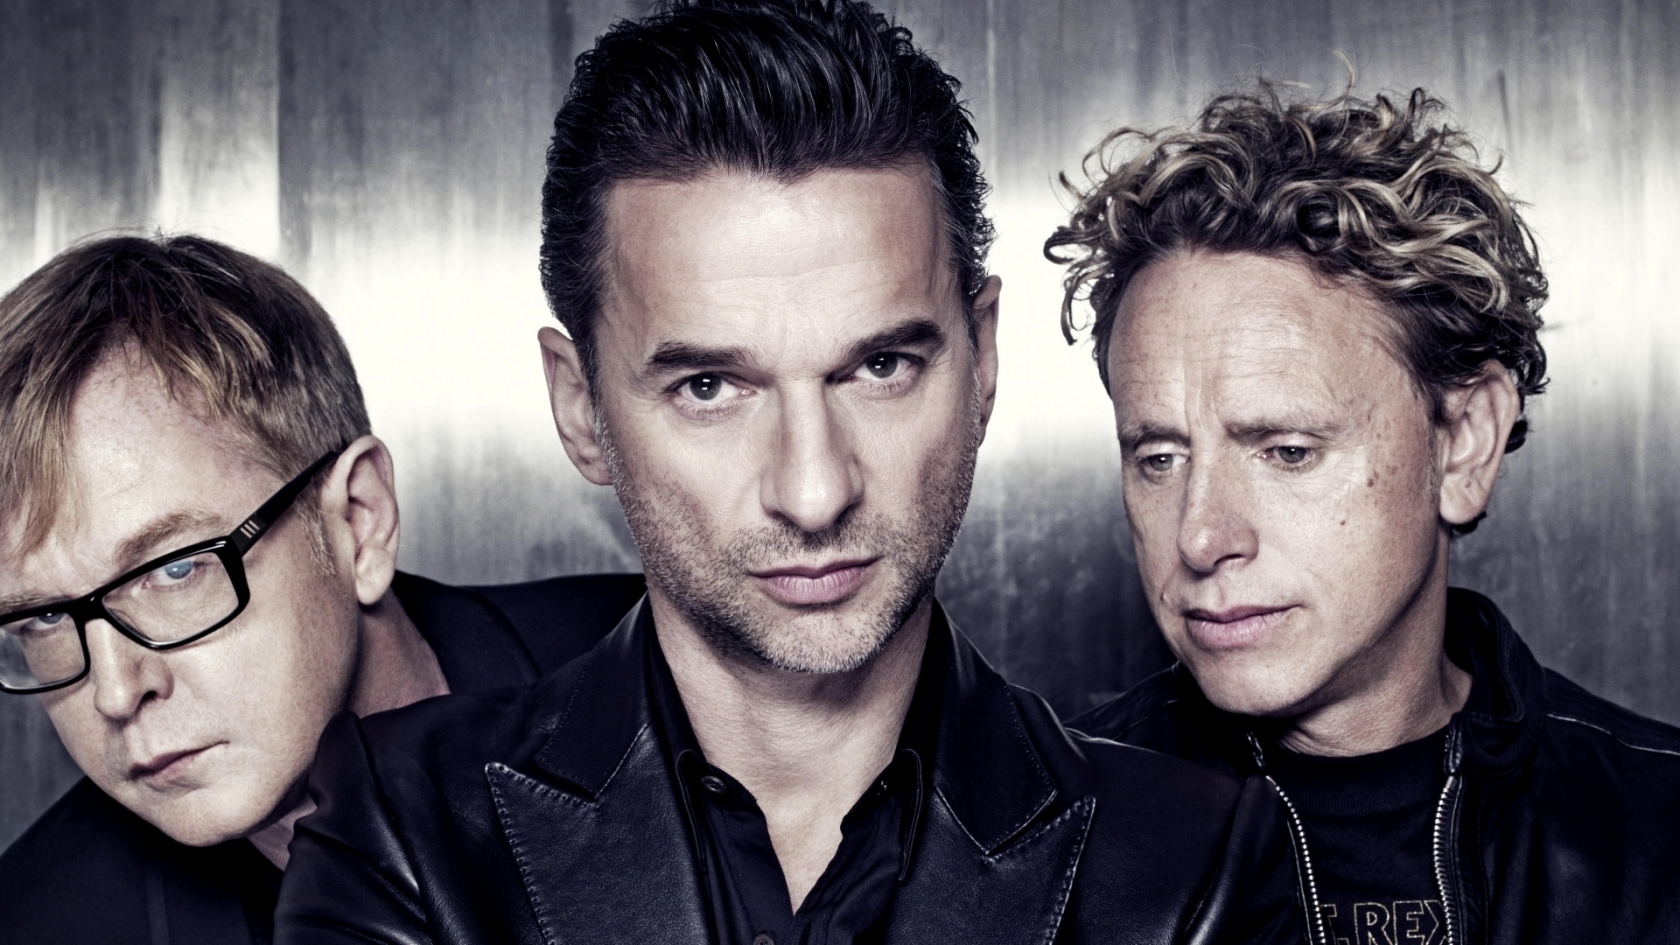 Depeche Mode Poster for 1680 x 945 HDTV resolution